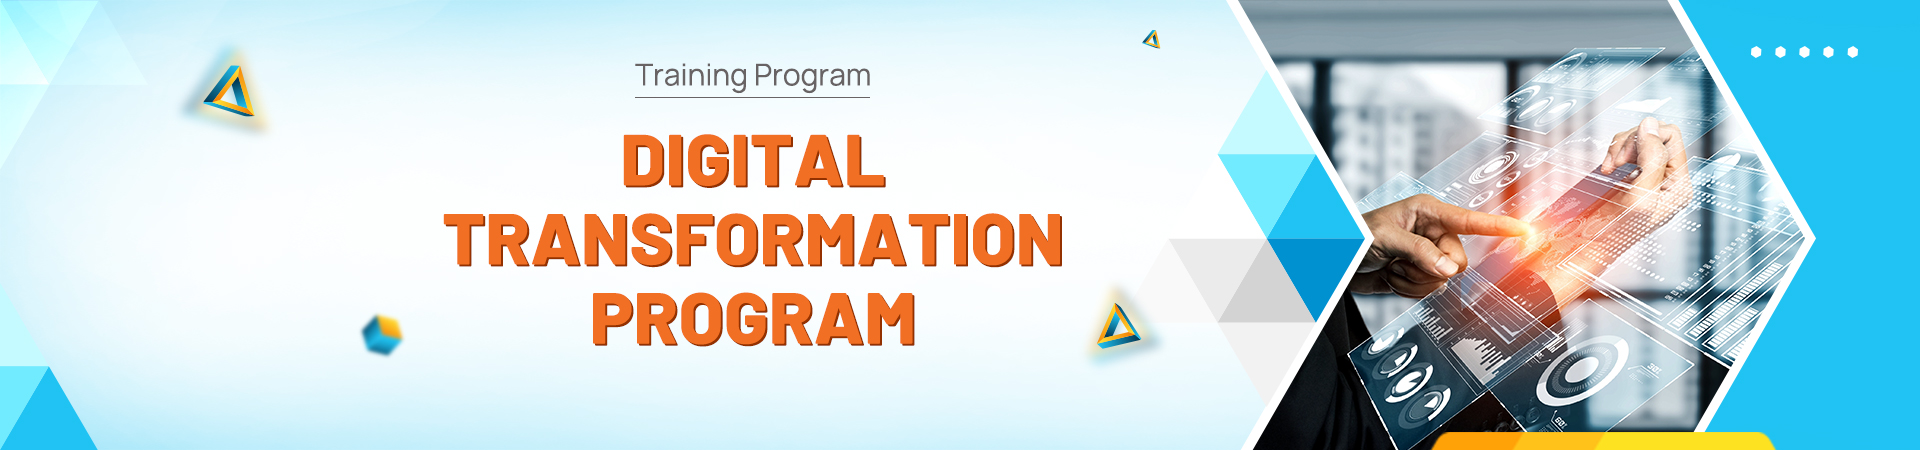 Digital Transformation Program